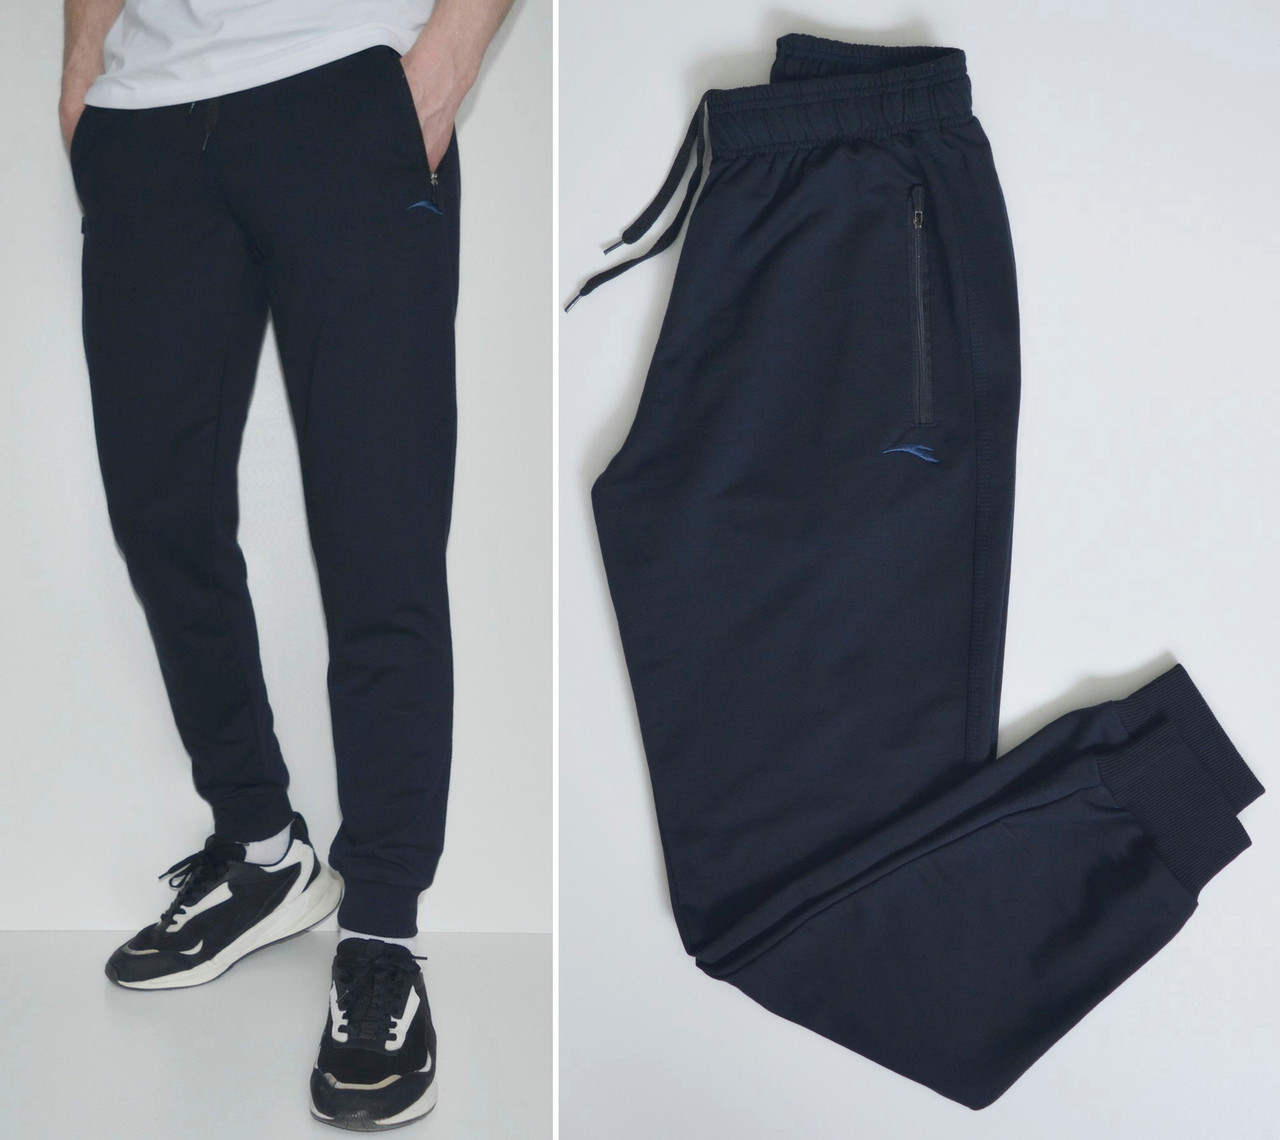 S,M,L . Чоловічі спортивні штани на менжеті із трикотажу двунитки, темно-сині